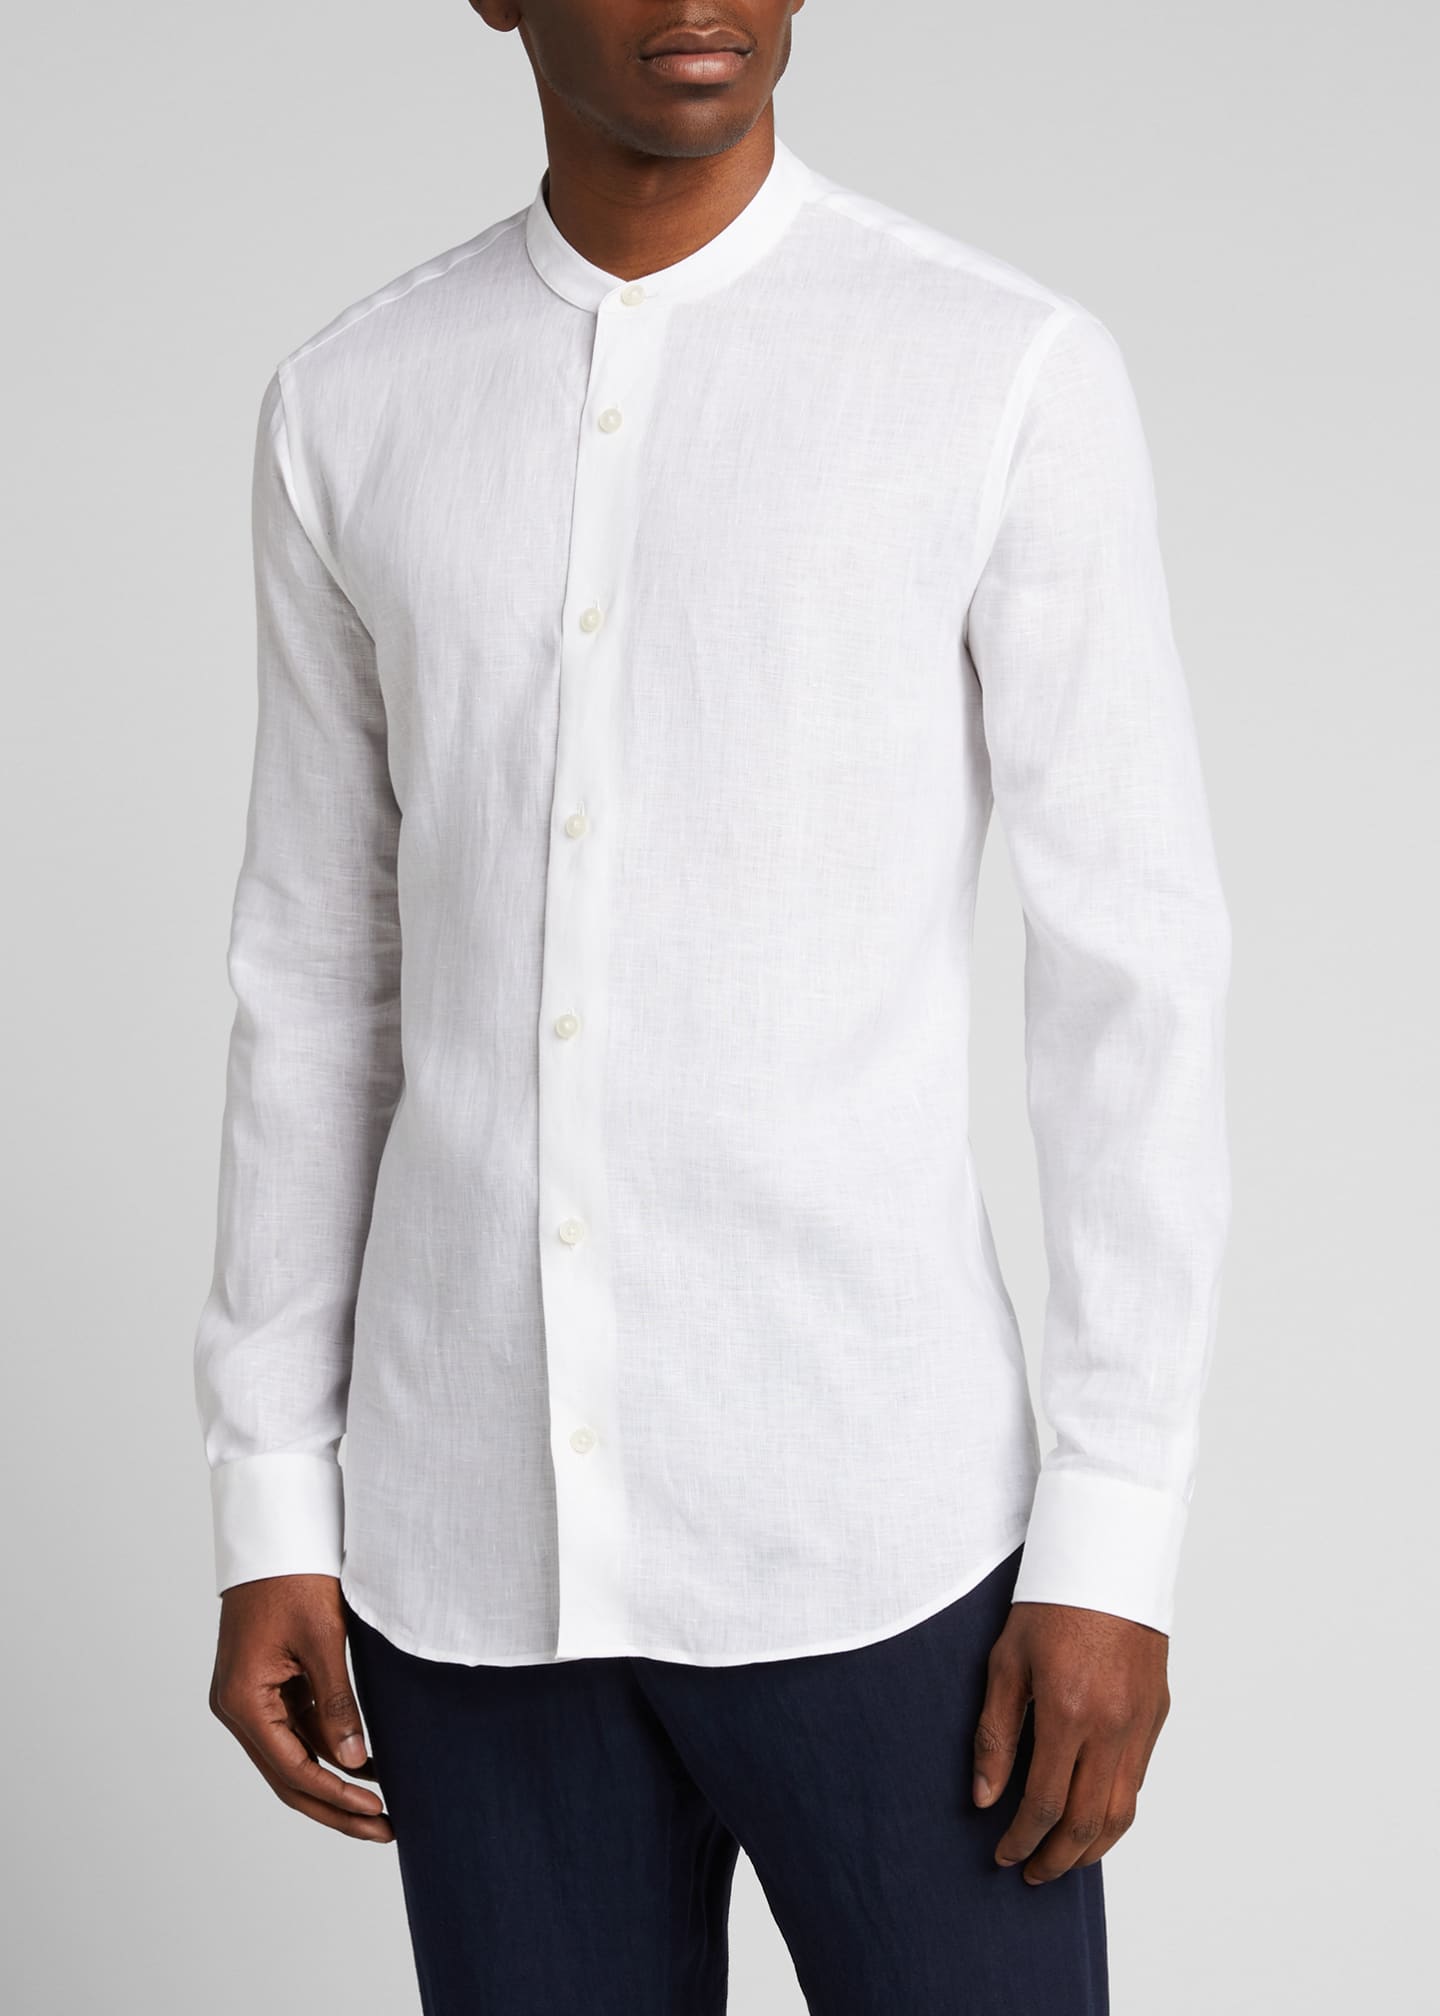 Z Zegna Men's Banded-Collar Linen Sport Shirt - Bergdorf Goodman